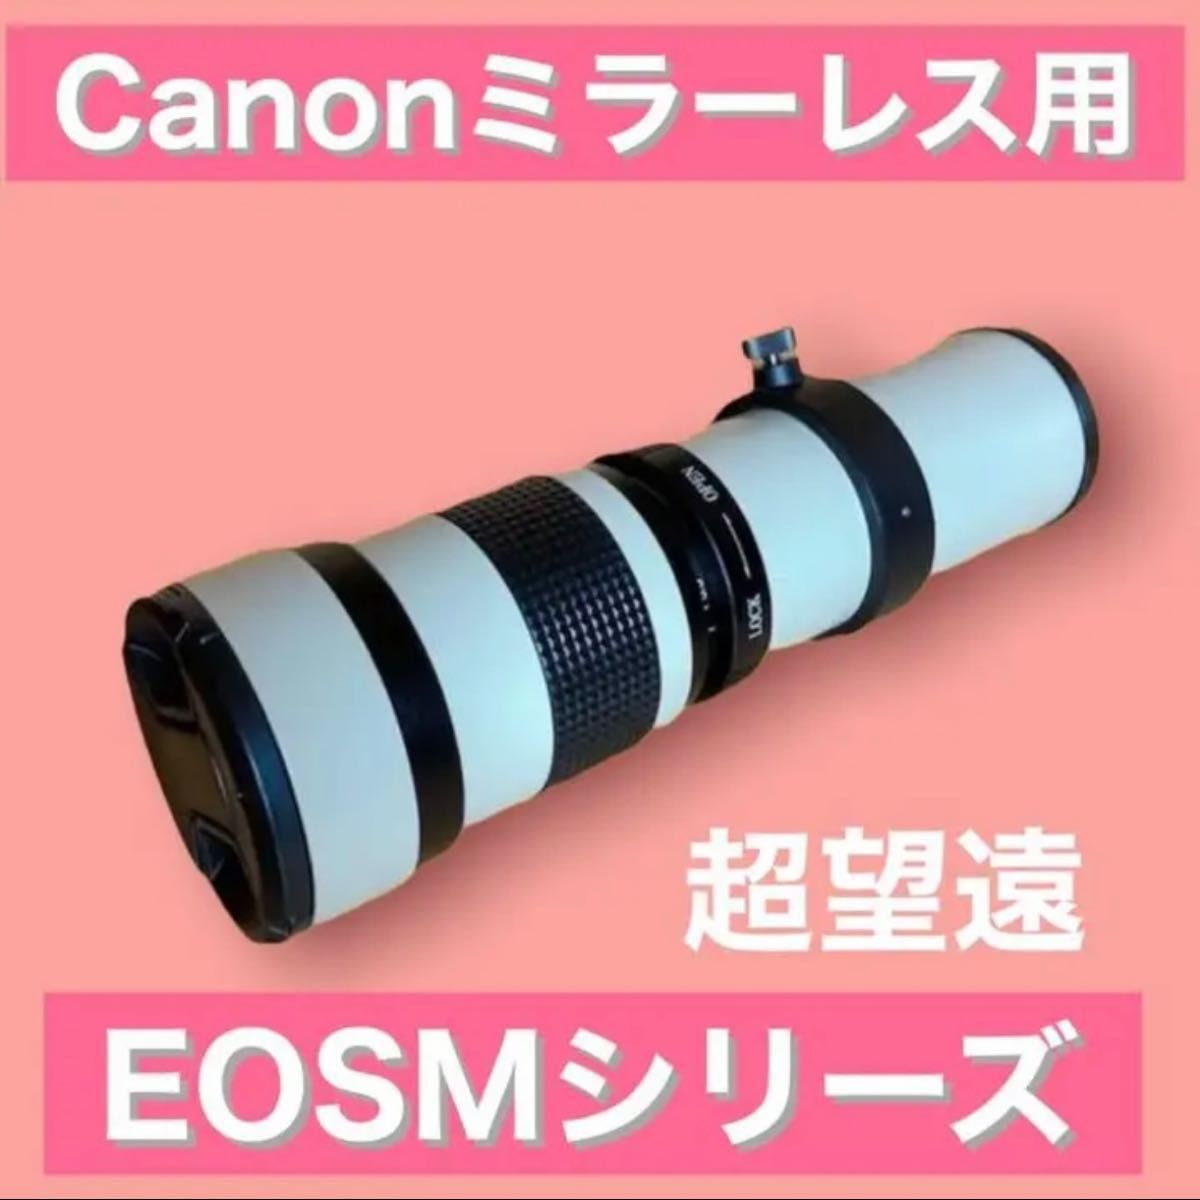 Canonミラーレス用 超望遠レンズ EOSMシリーズ対応 ホワイト白色